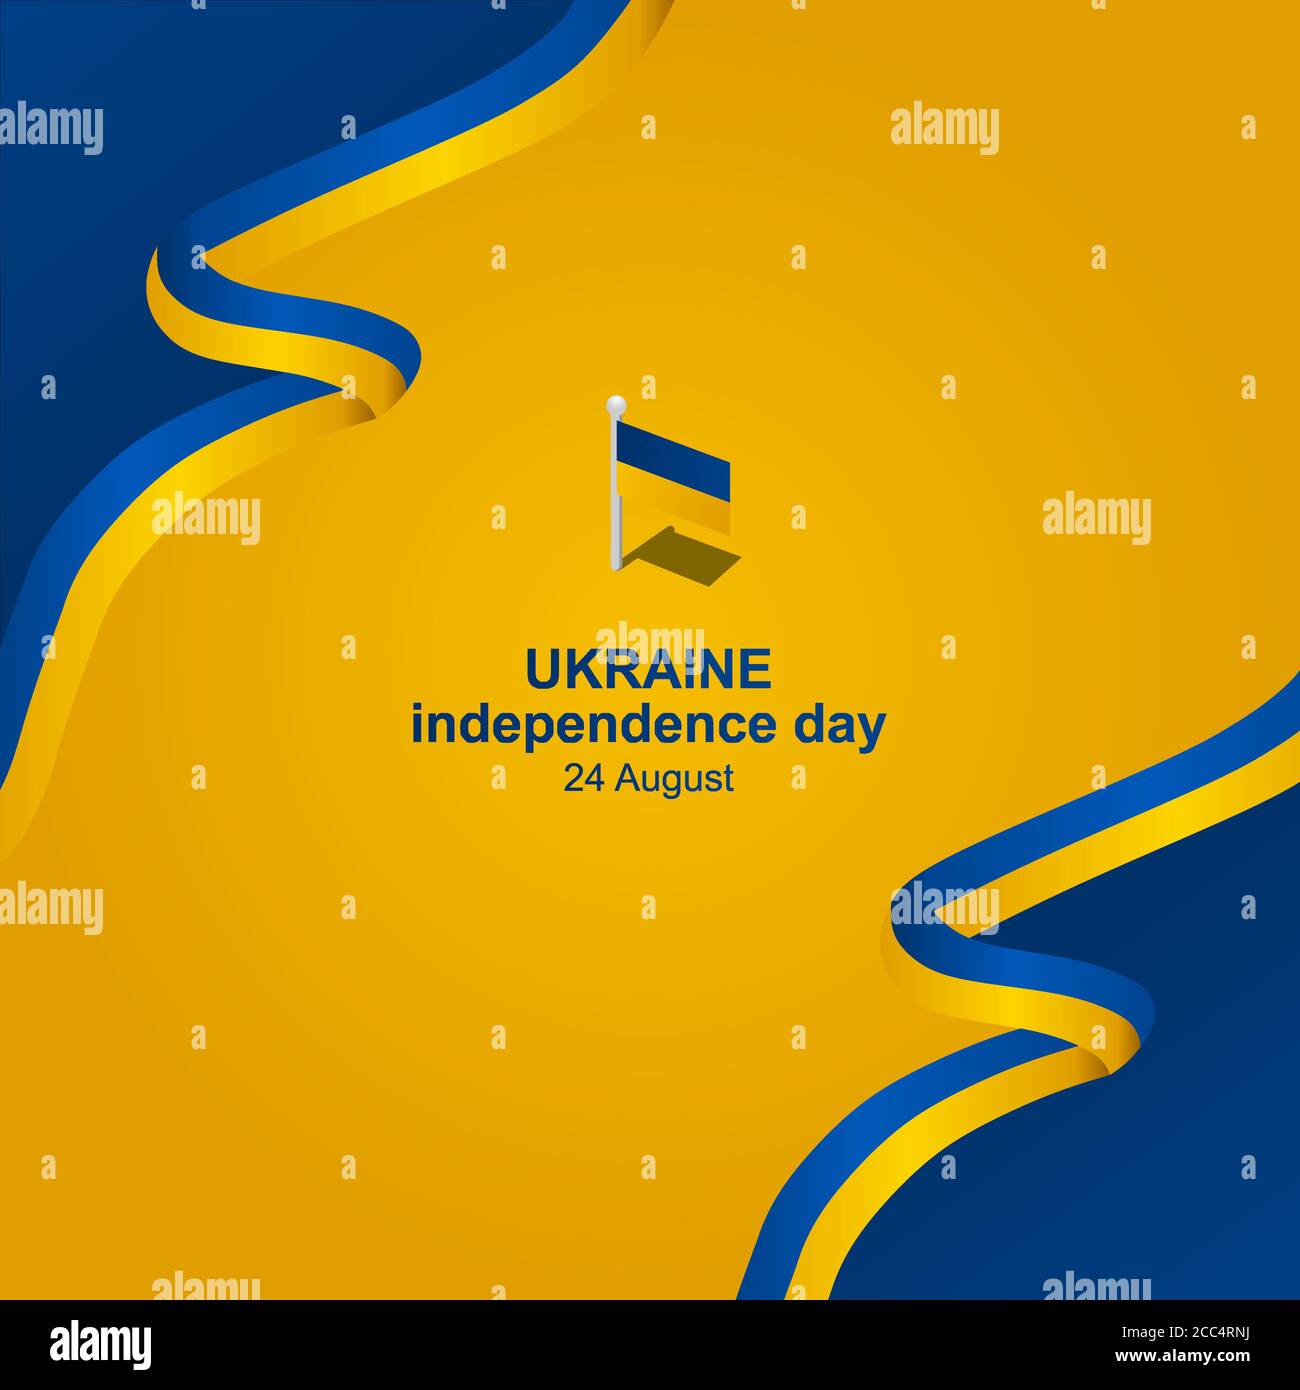 l'illustrazione vettoriale del giorno dell'indipendenza dell'ucraina, per accogliere l'importante giorno dell'Ucraina il 24 agosto, le dimensioni aggiuntive includono strato per strato Illustrazione Vettoriale